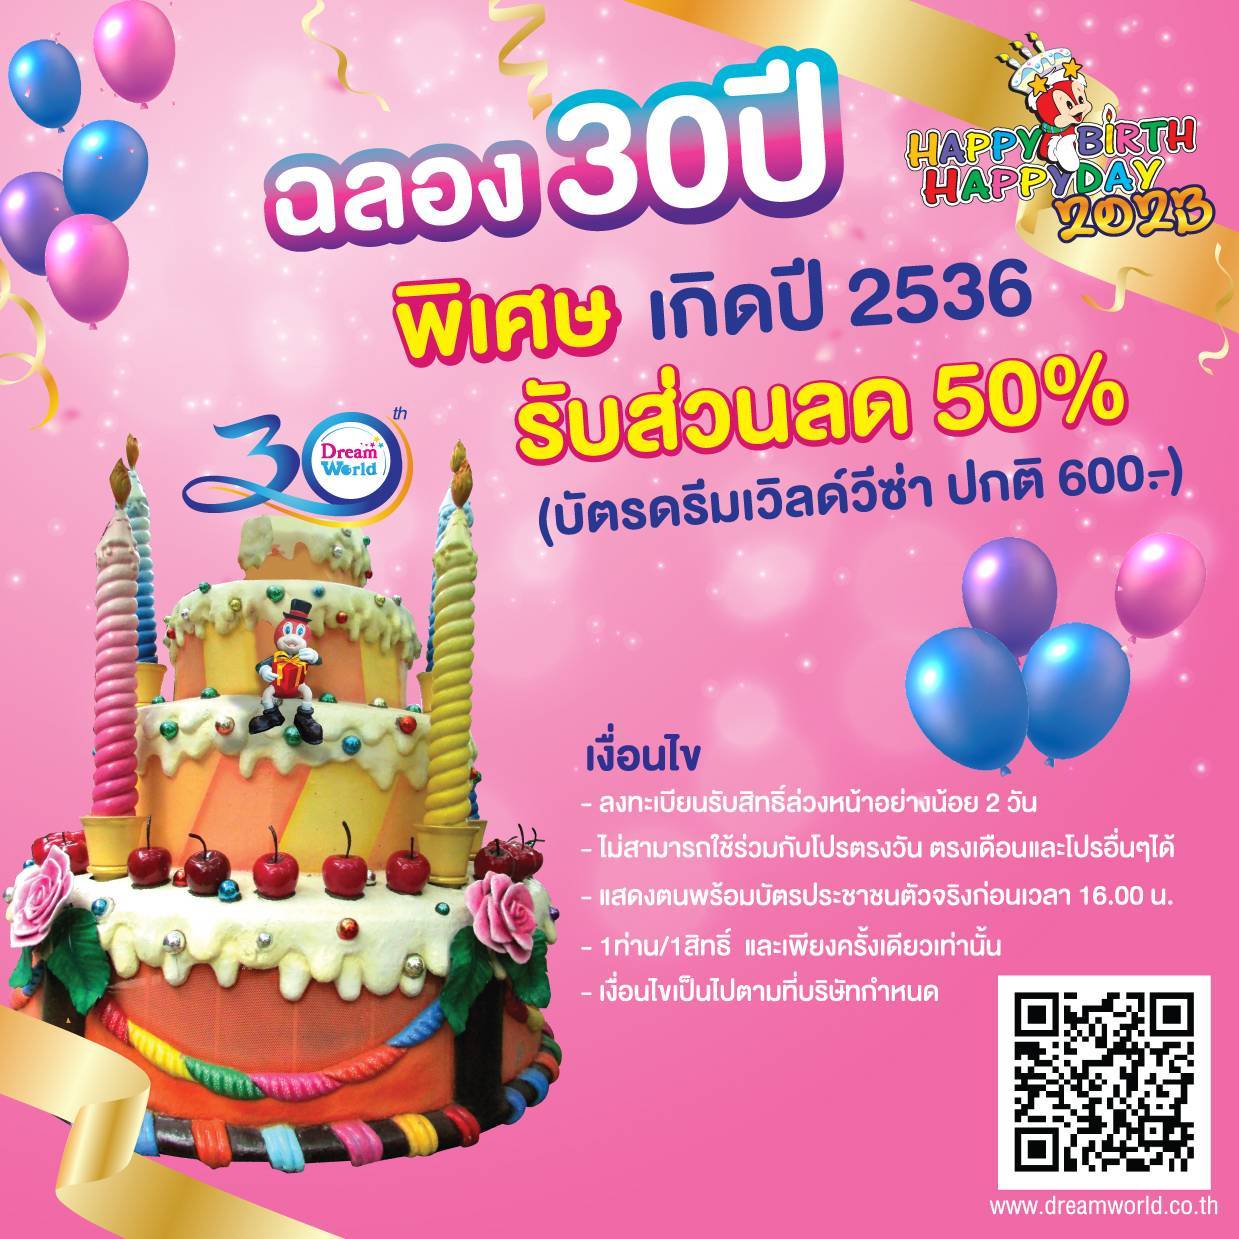 10 deals in thailand- dream world